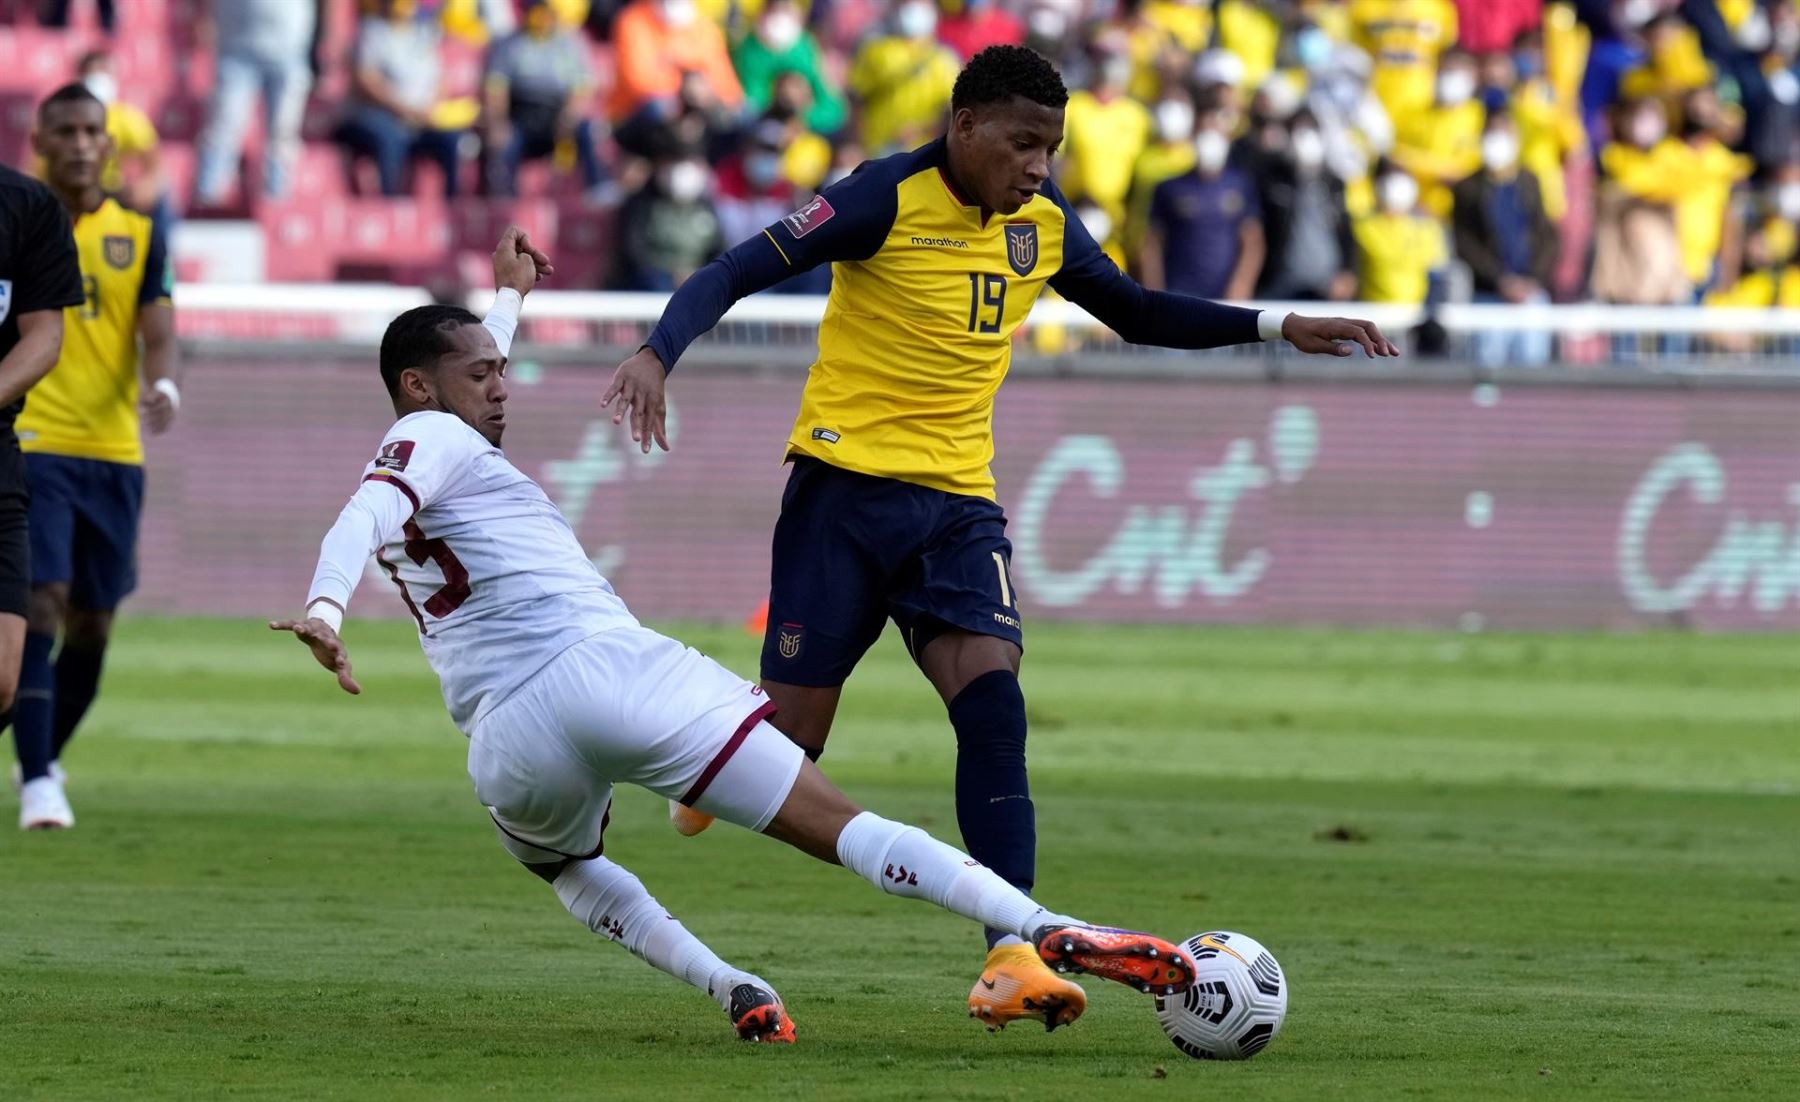 Catar 2022: Ecuador vence por 1-0 a Venezuela en el primer tiempo